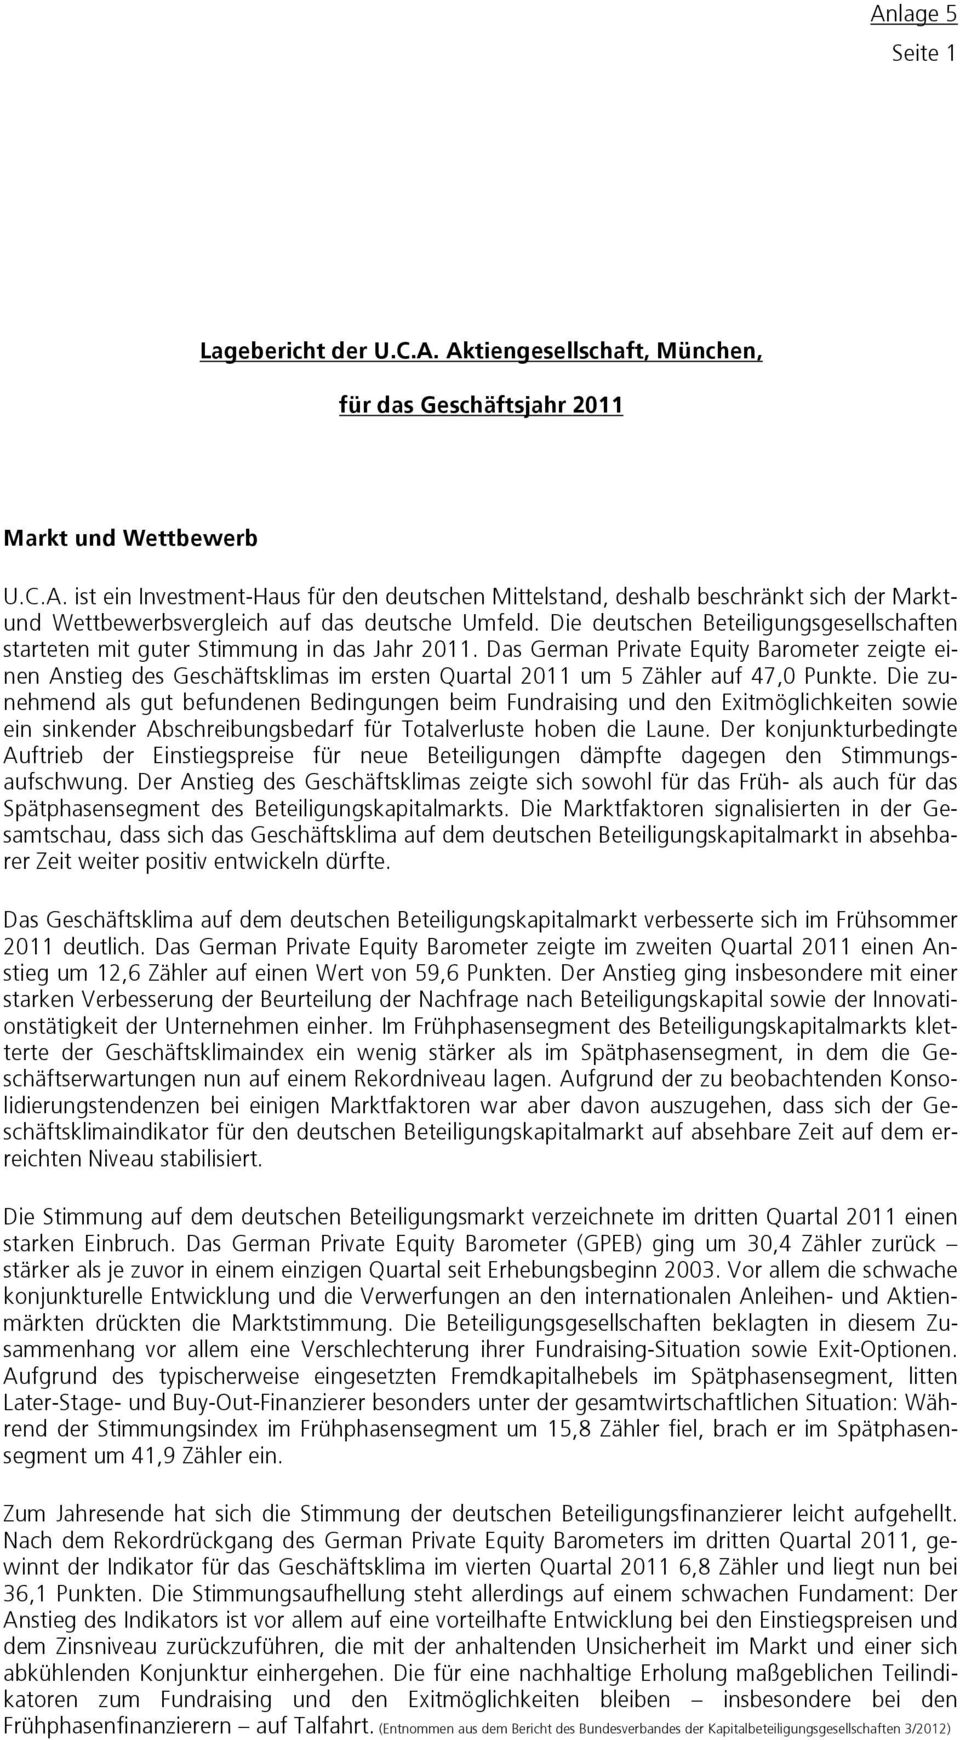 Das German Private Equity Barometer zeigte einen Anstieg des Geschäftsklimas im ersten Quartal 2011 um 5 Zähler auf 47,0 Punkte.